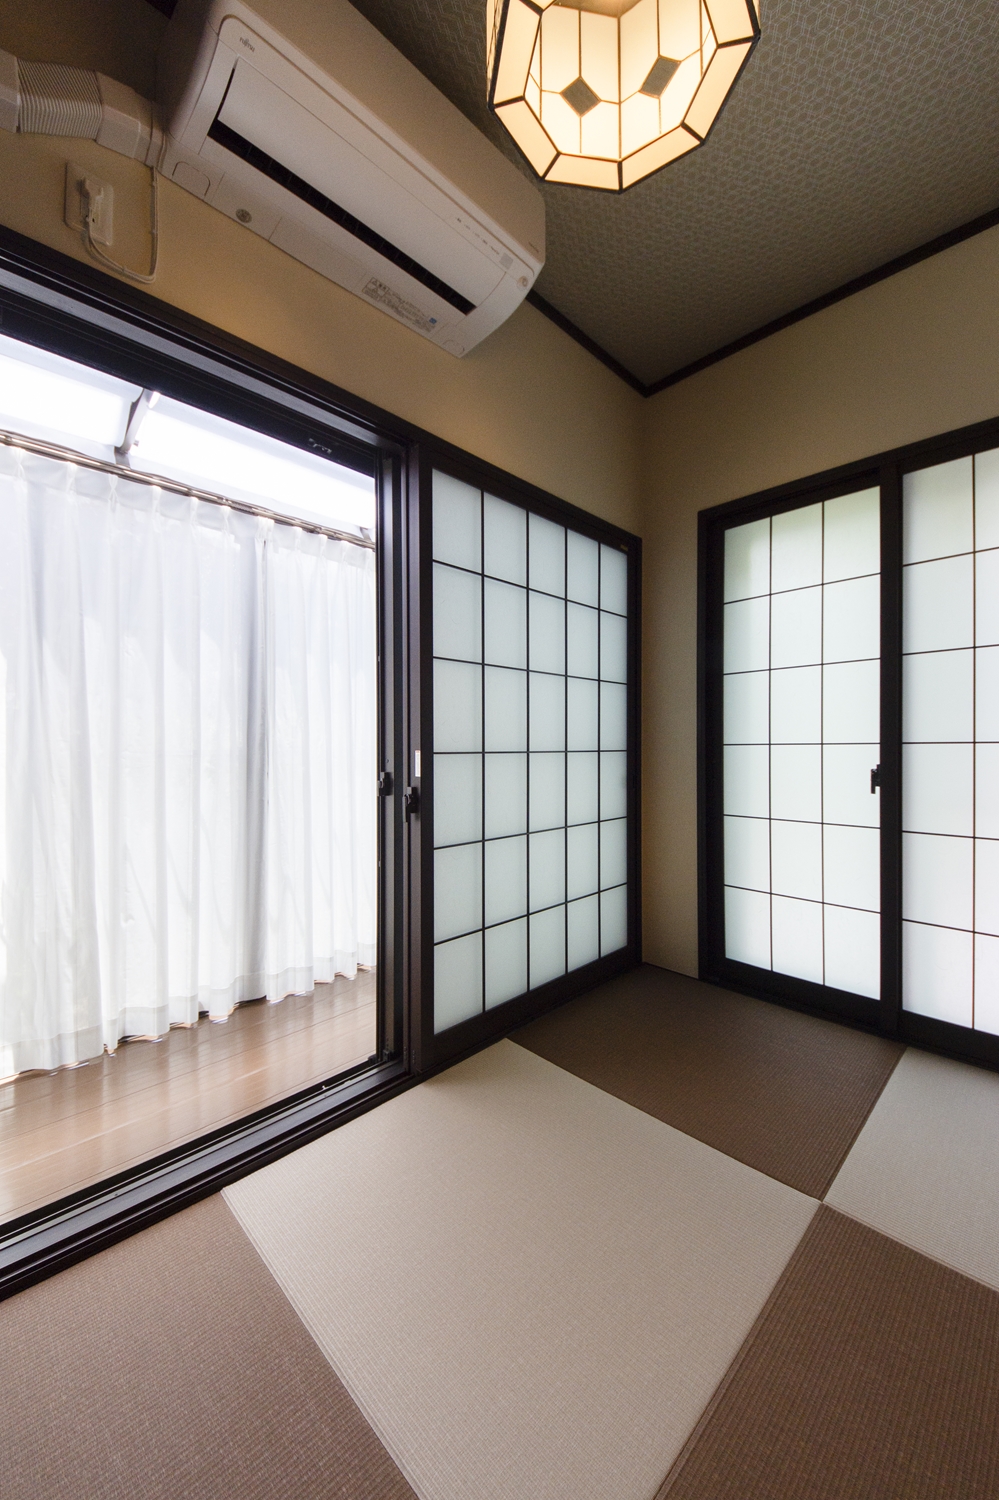 壁を取り払い、和室とサンルームを増築しました。琉球畳を市松敷きにして、オシャレで和モダンな空間に♪